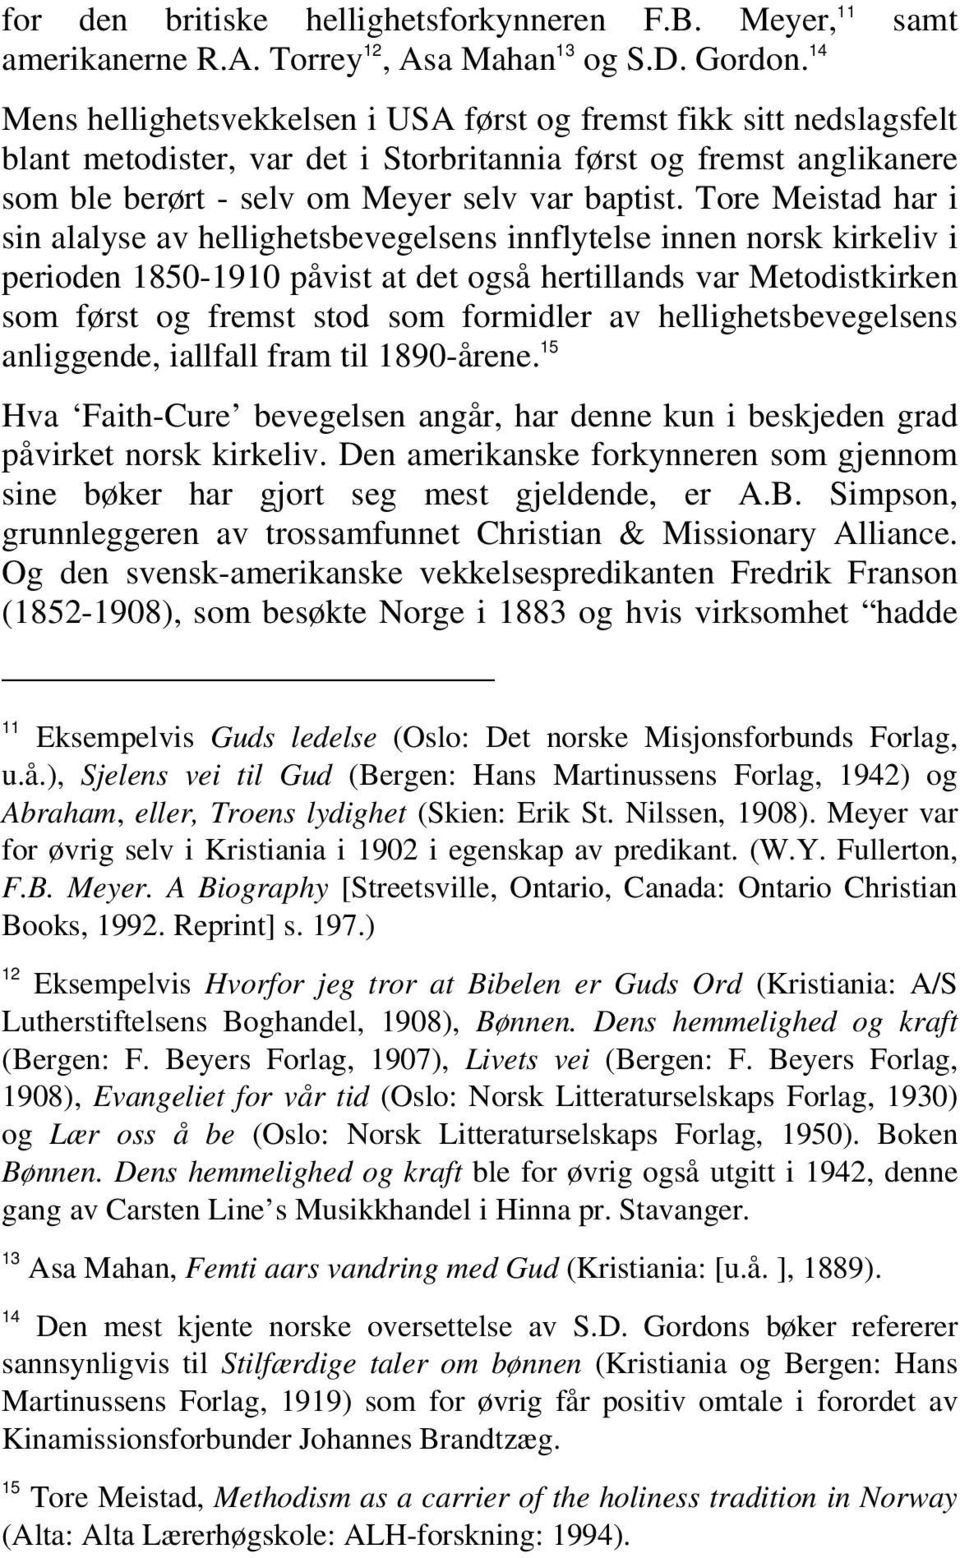 Tore Meistad har i sin alalyse av hellighetsbevegelsens innflytelse innen norsk kirkeliv i perioden 1850-1910 påvist at det også hertillands var Metodistkirken som først og fremst stod som formidler